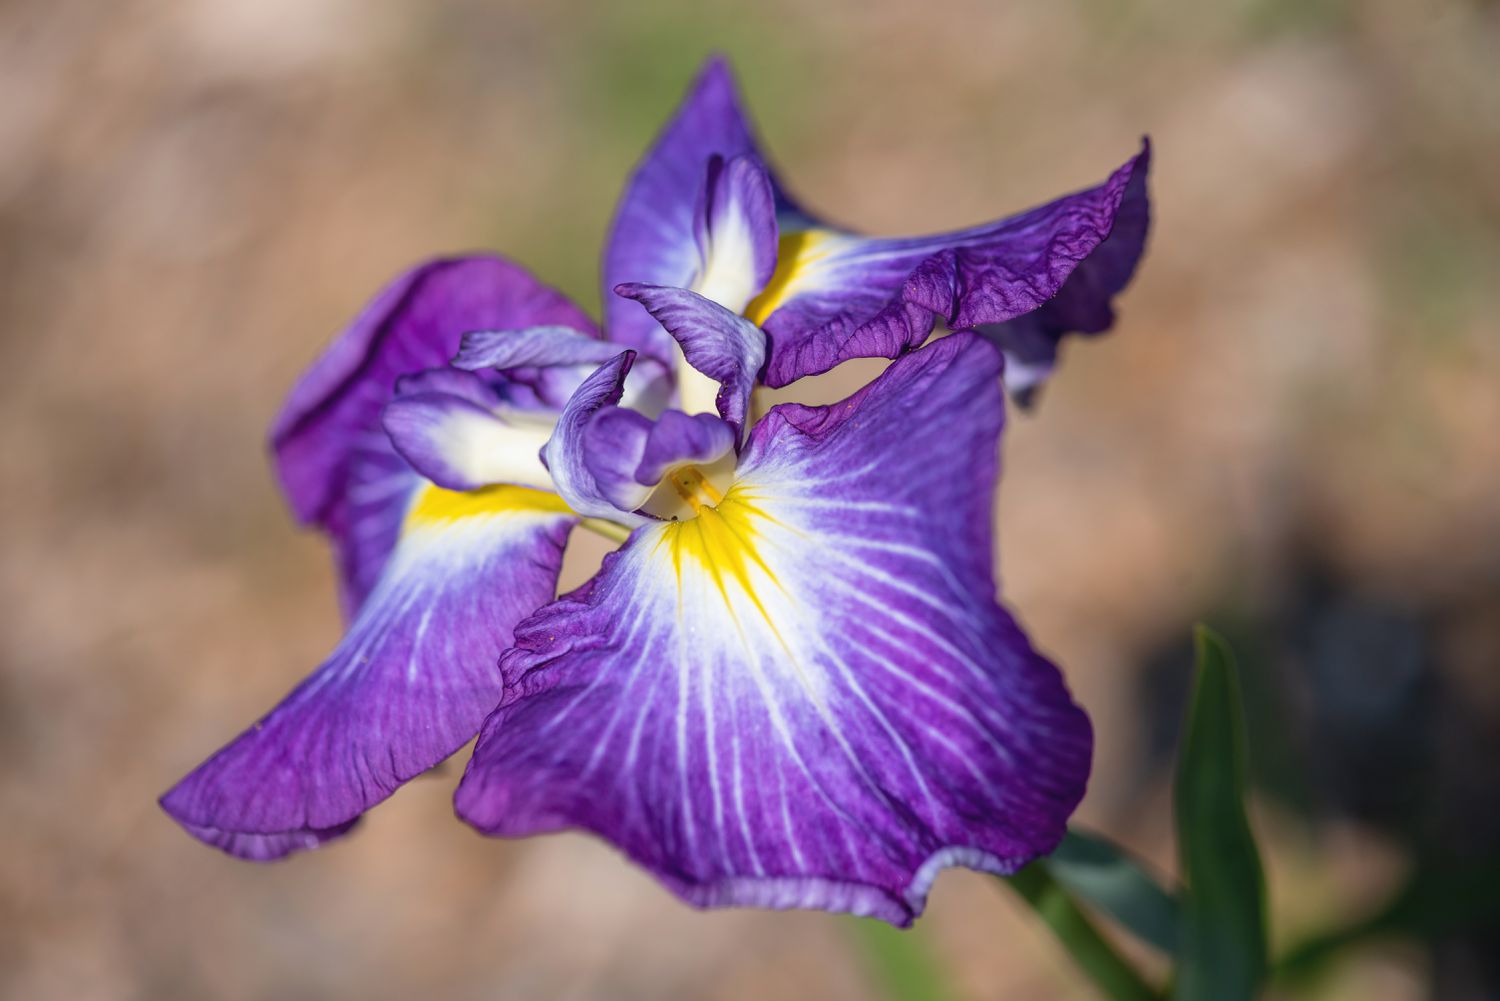 Irisblüte mit lila, weißen und gelben gekräuselten Blütenblättern in Großaufnahme